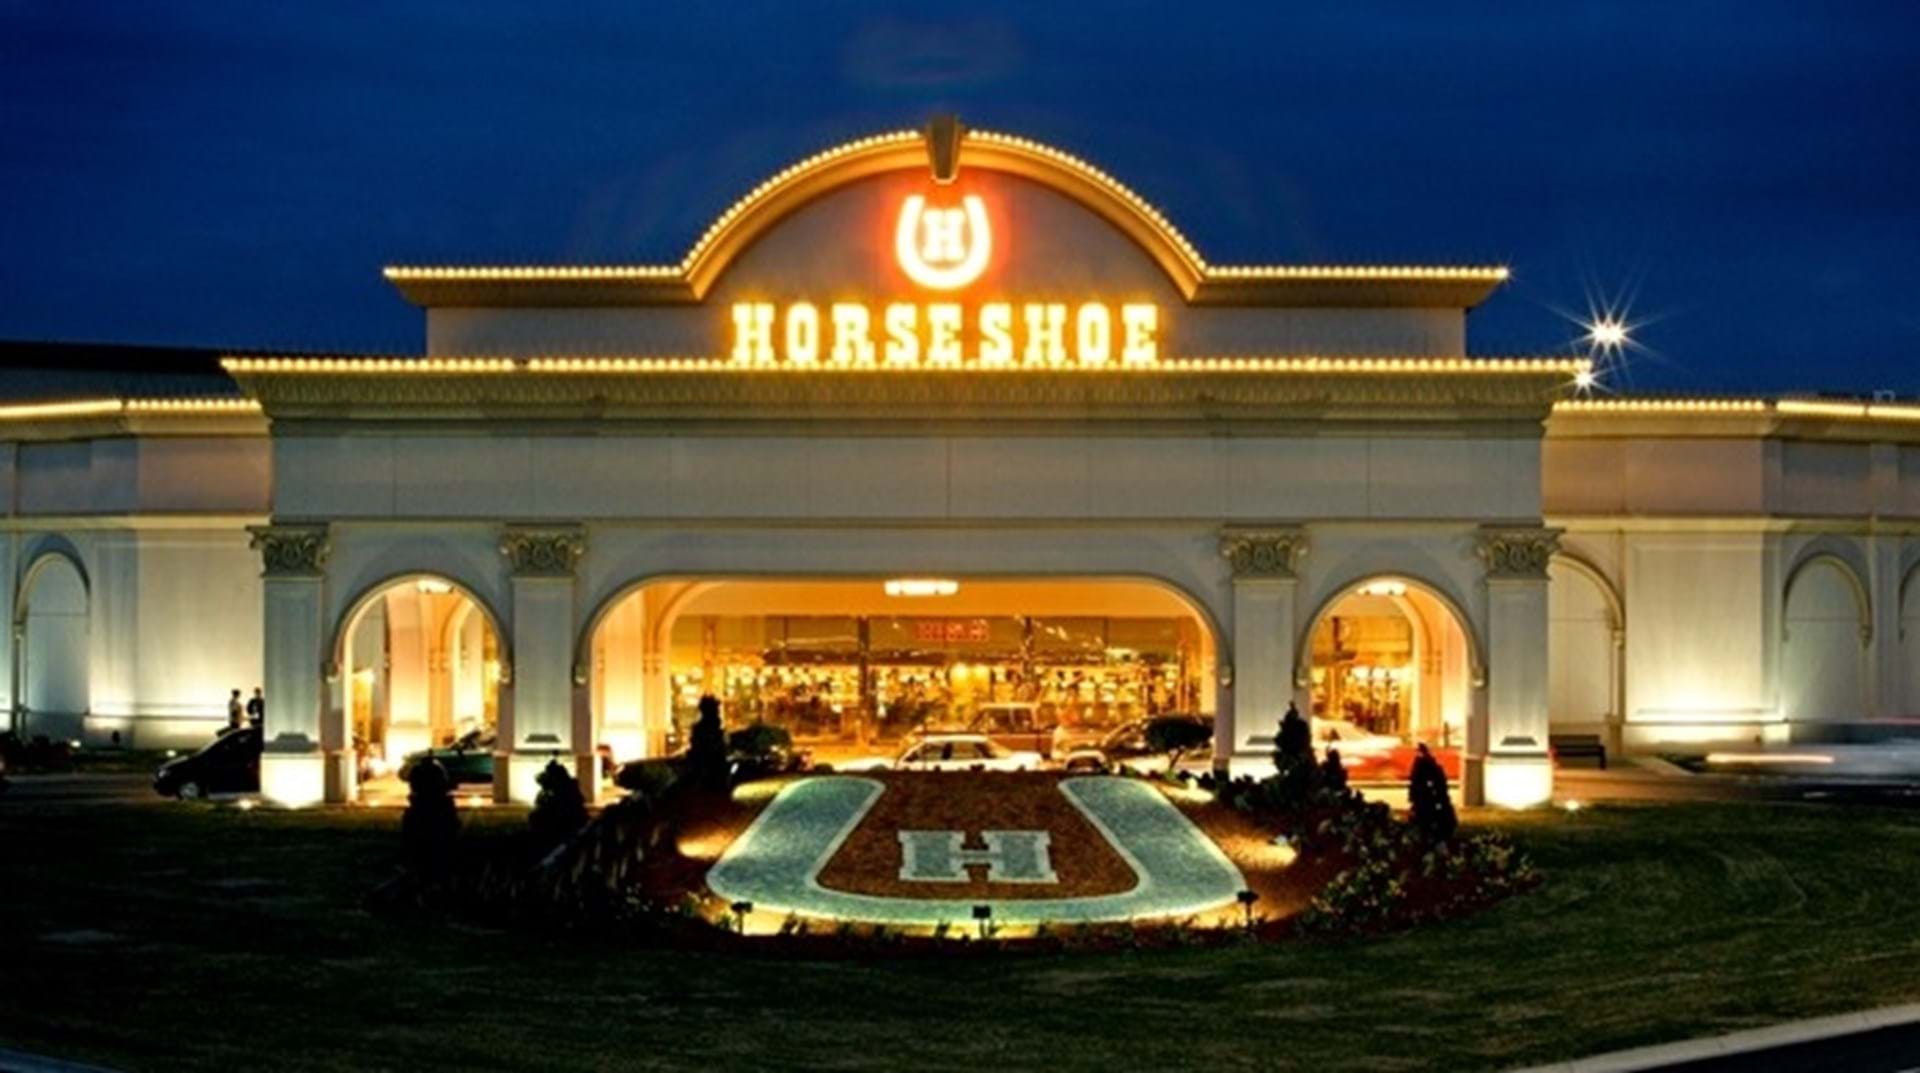 Horseshoe Casino, Council Bluffs, Iowa